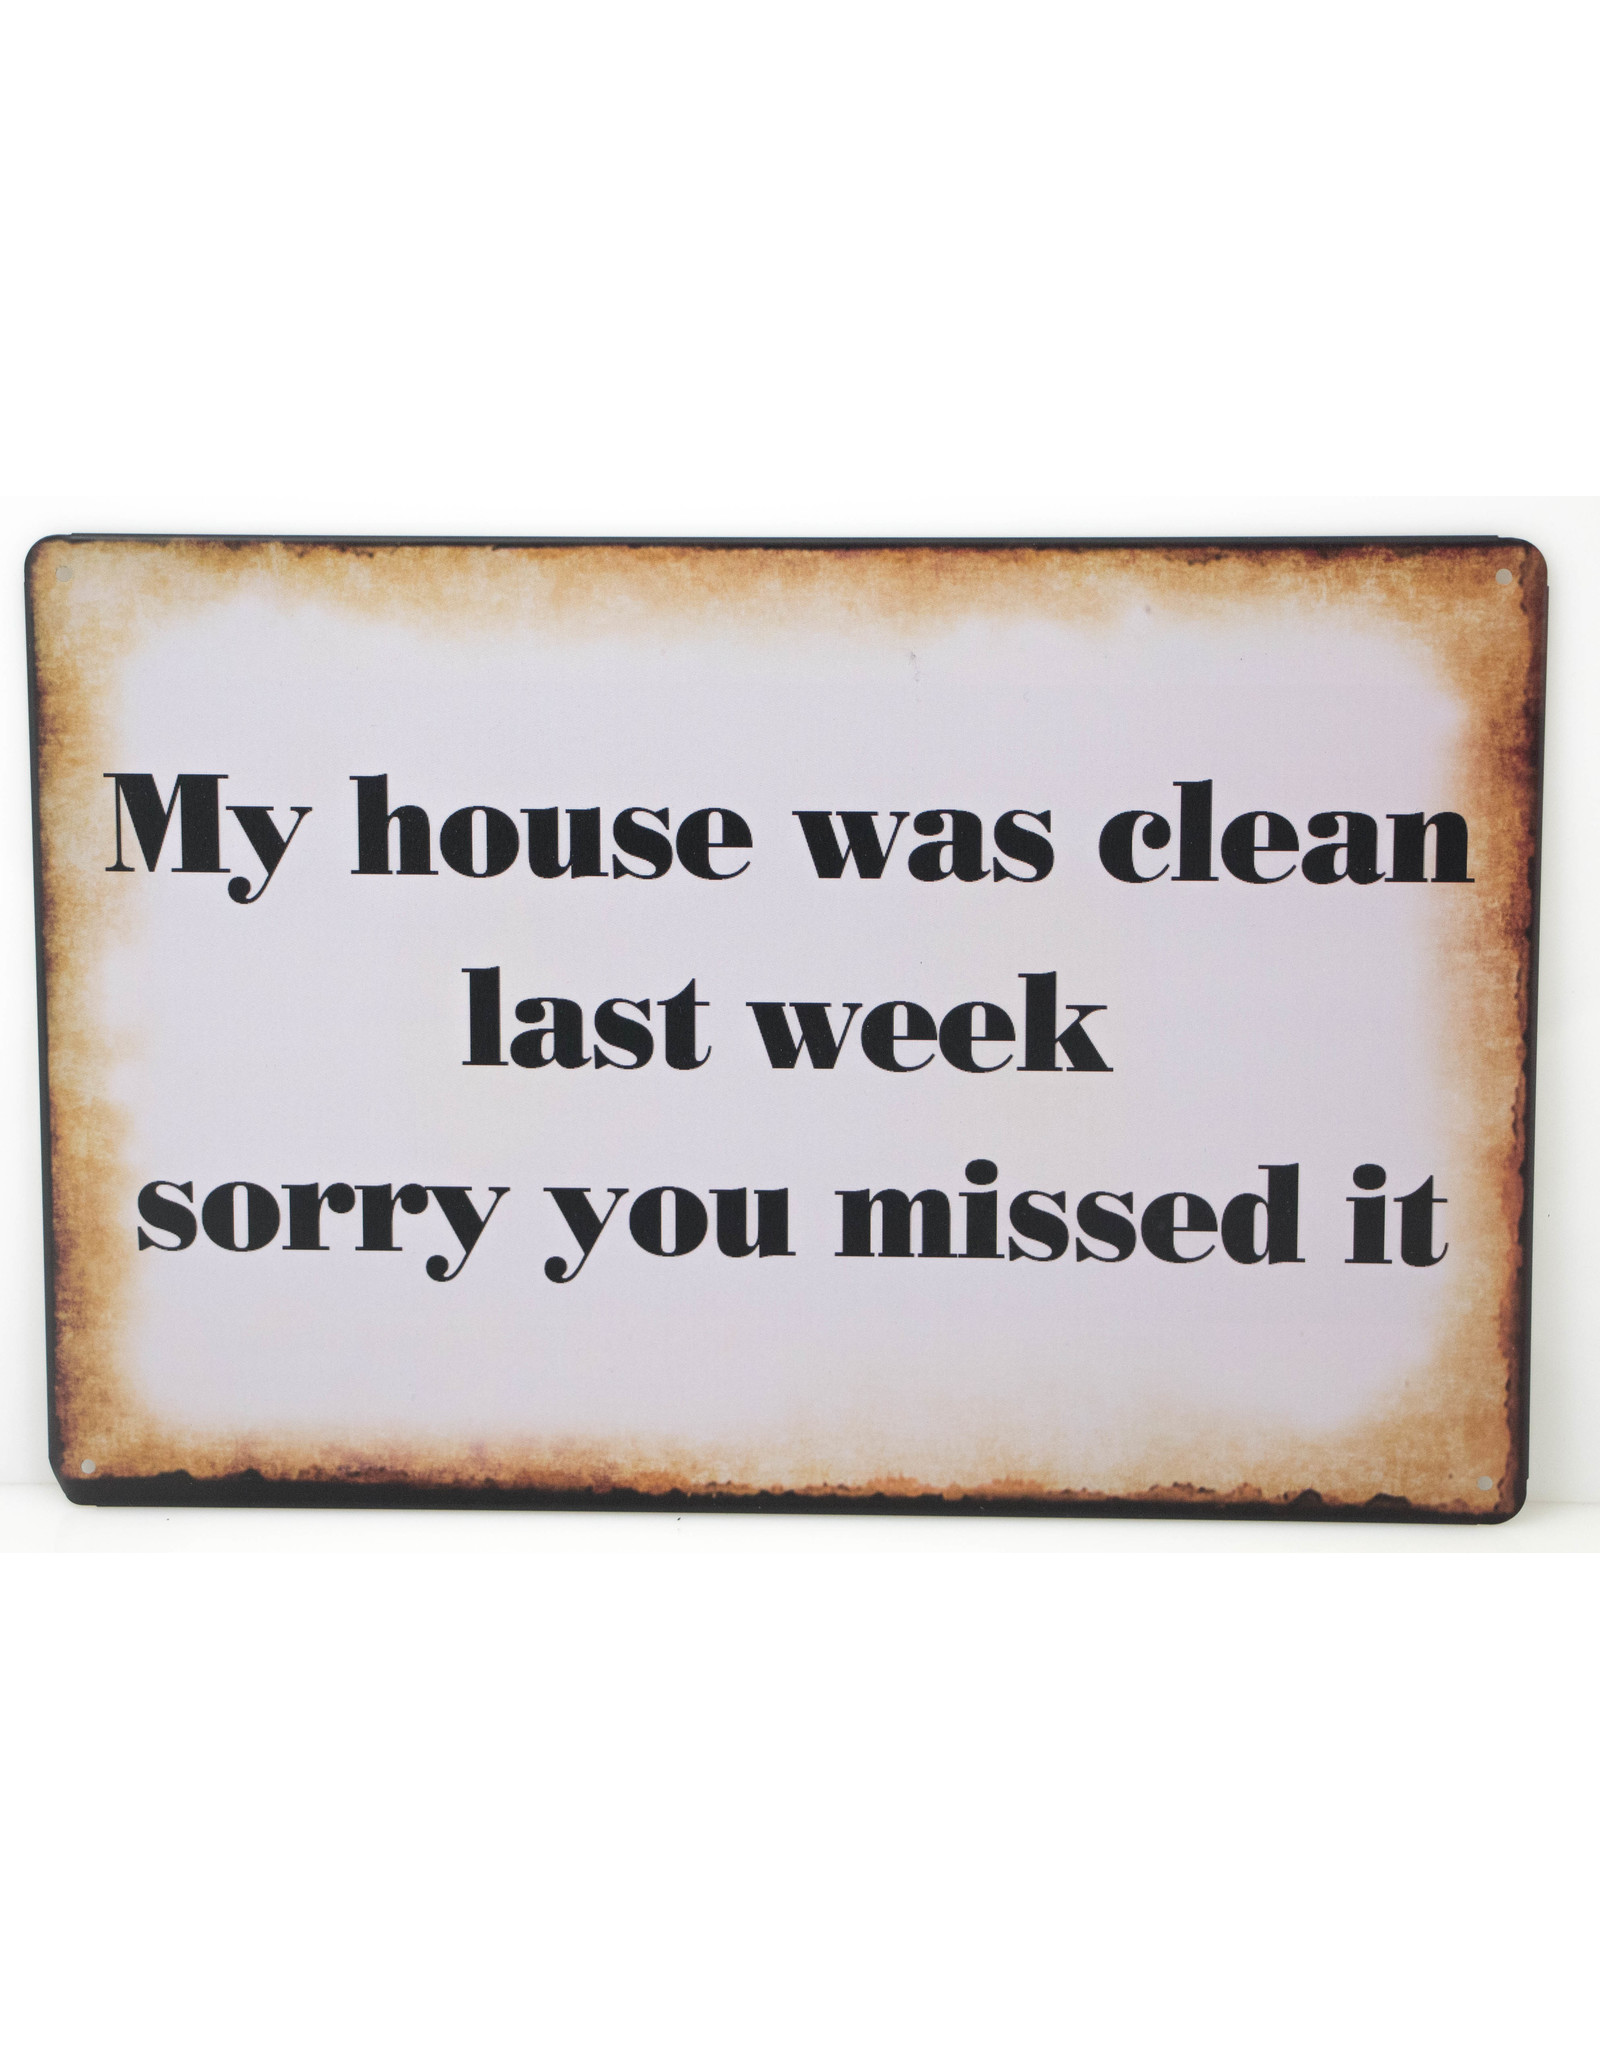 My house was clean last week...